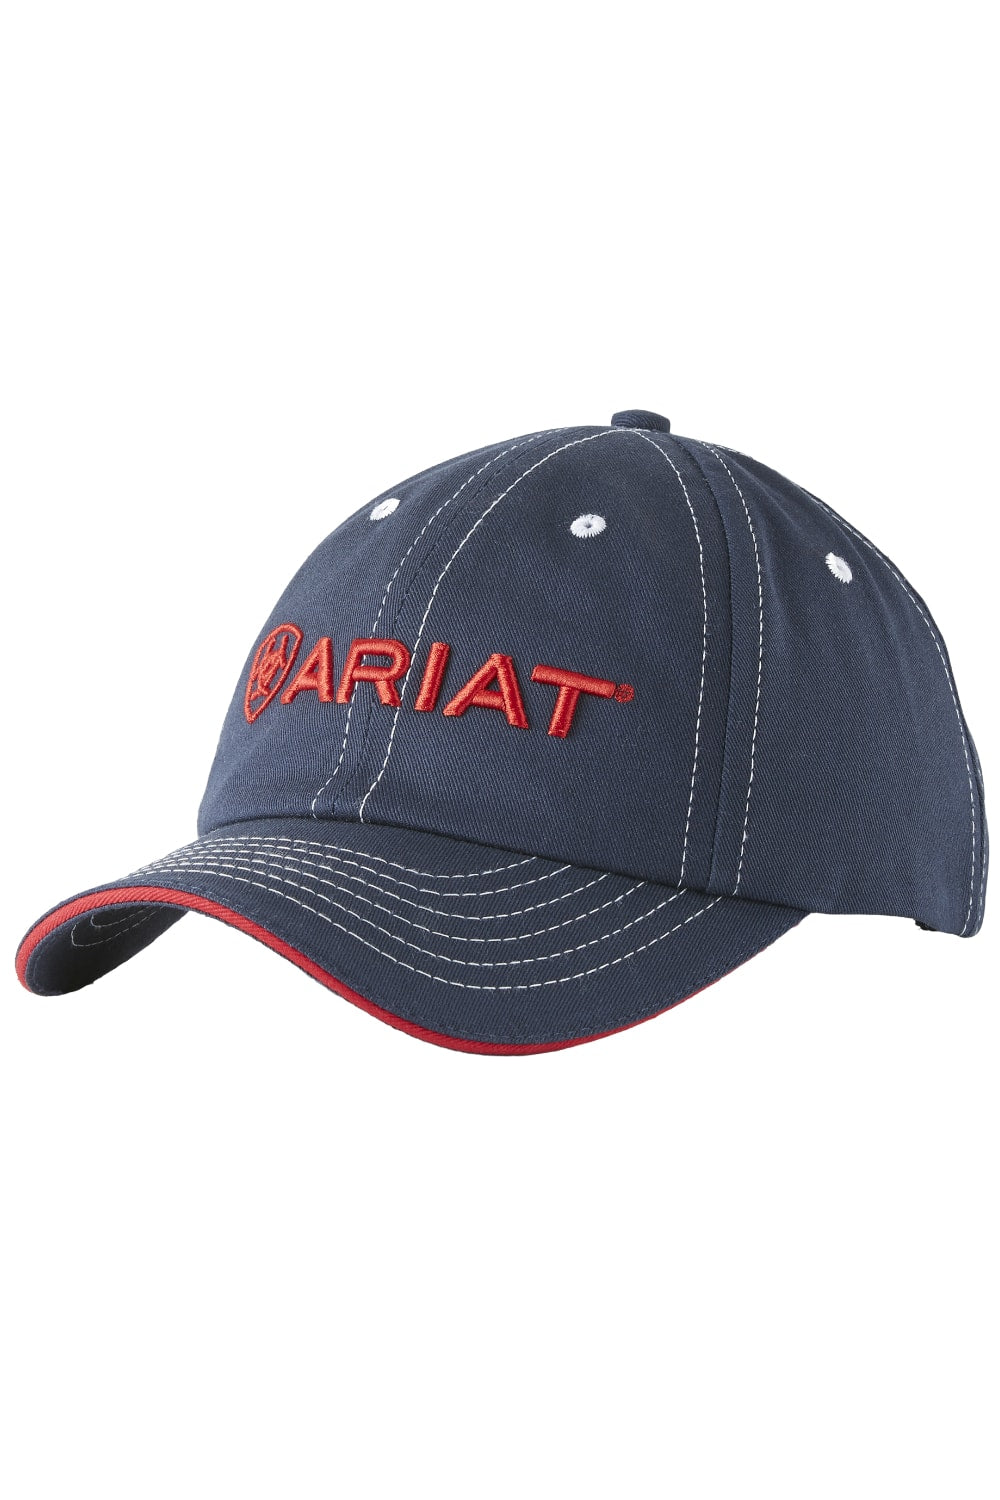 Ariat Unisex Team II Cap in Navy/Red 